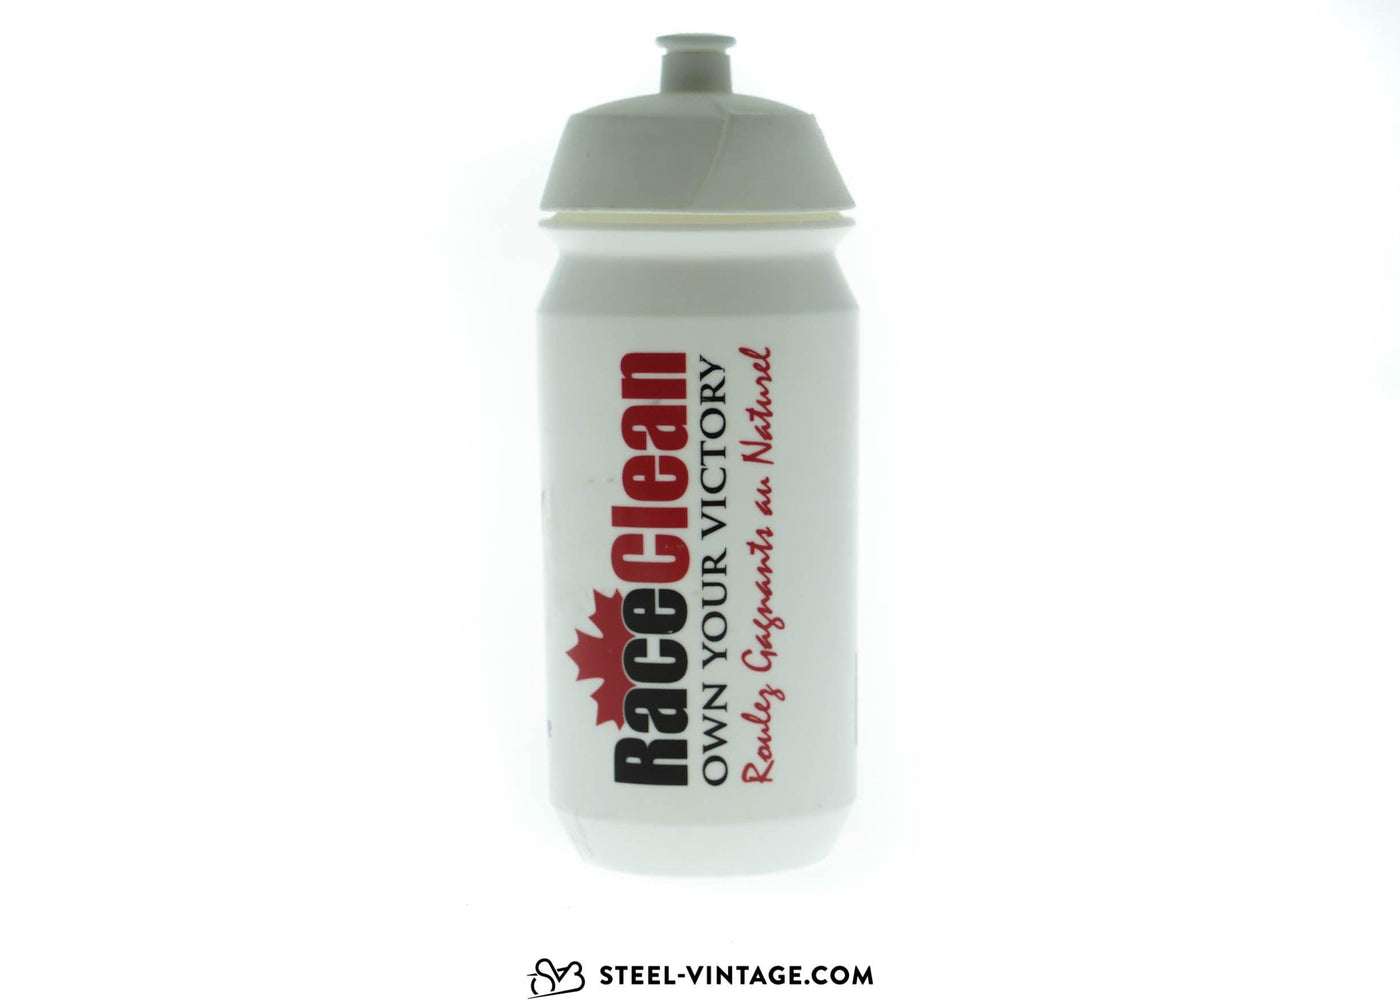 https://steel-vintage.com/cdn/shop/files/canadian-national-team-water-bottle-2_1400x.jpg?v=1701281629